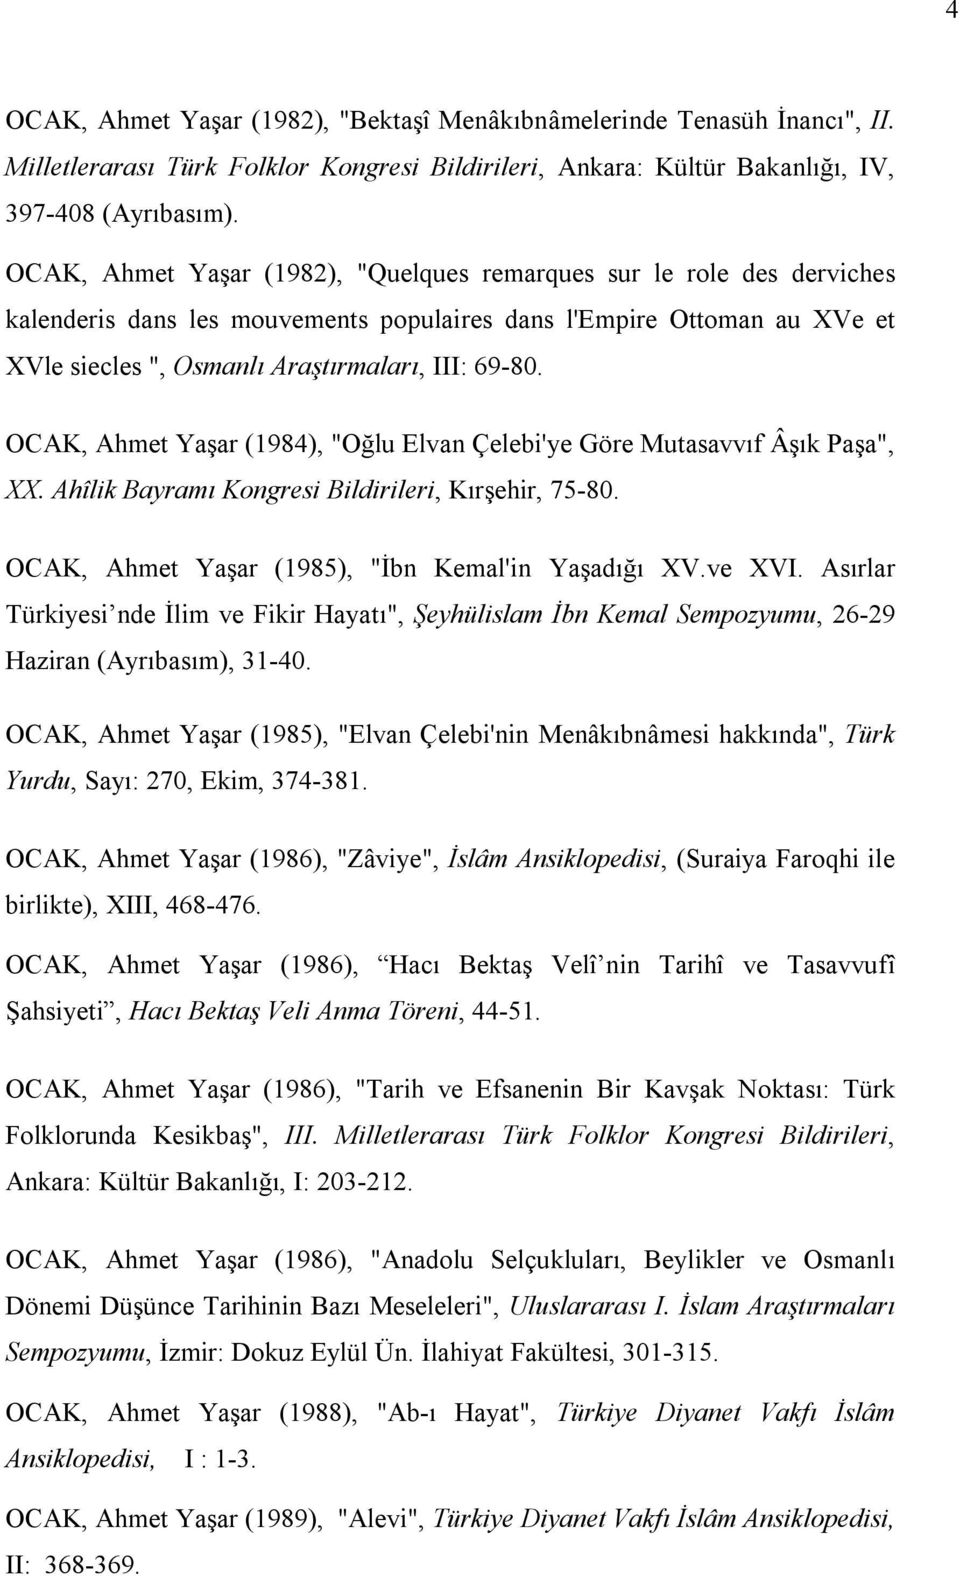 OCAK, Ahmet Yaşar (1984), "Oğlu Elvan Çelebi'ye Göre Mutasavvıf Âşık Paşa", XX. Ahîlik Bayramı Kongresi Bildirileri, Kırşehir, 75-80. OCAK, Ahmet Yaşar (1985), "İbn Kemal'in Yaşadığı XV.ve XVI.